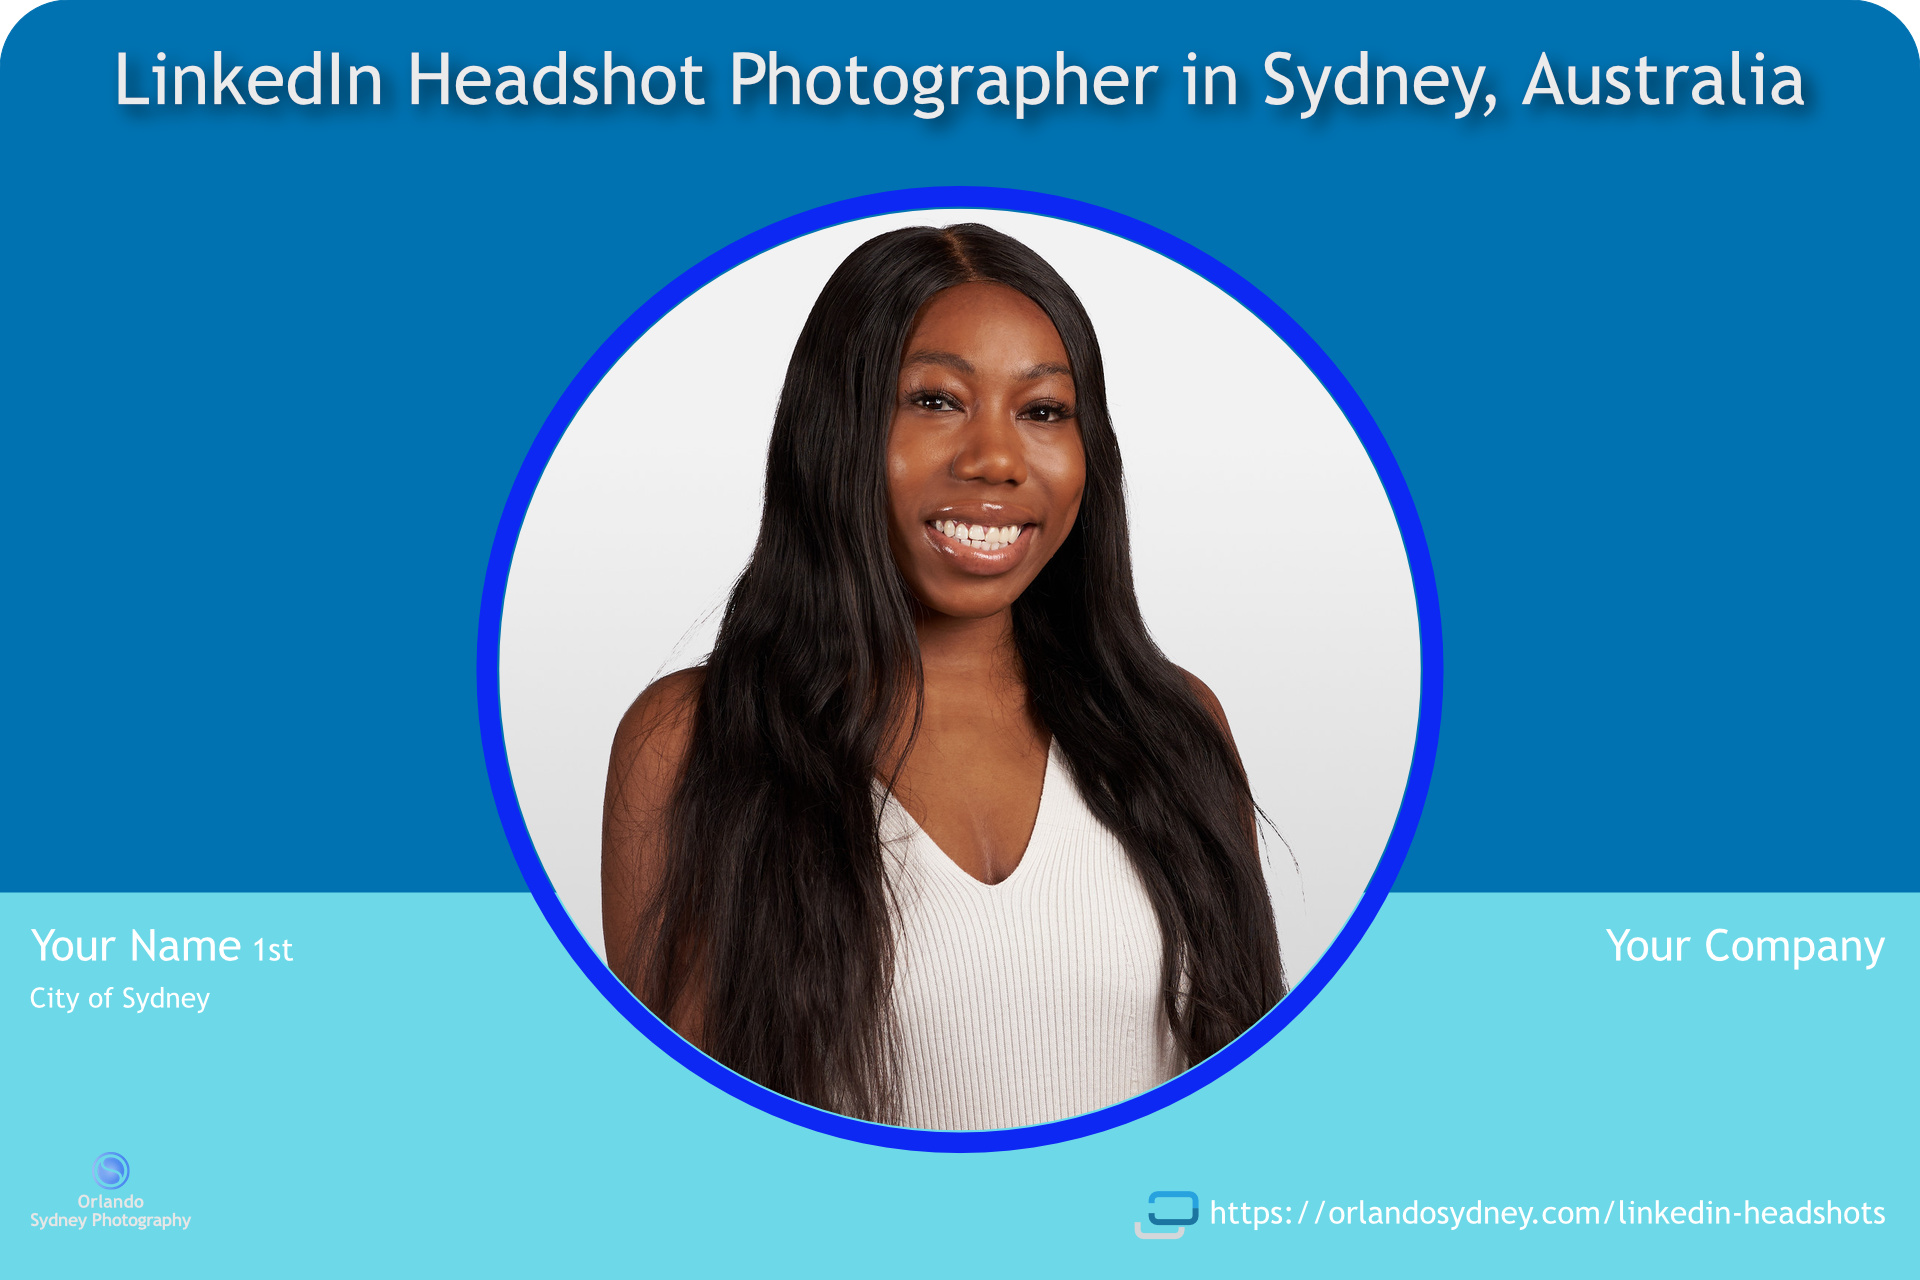 LinkedIn Headshot Photography Profile Photo Example. Orlando Sydney Headshot Photography